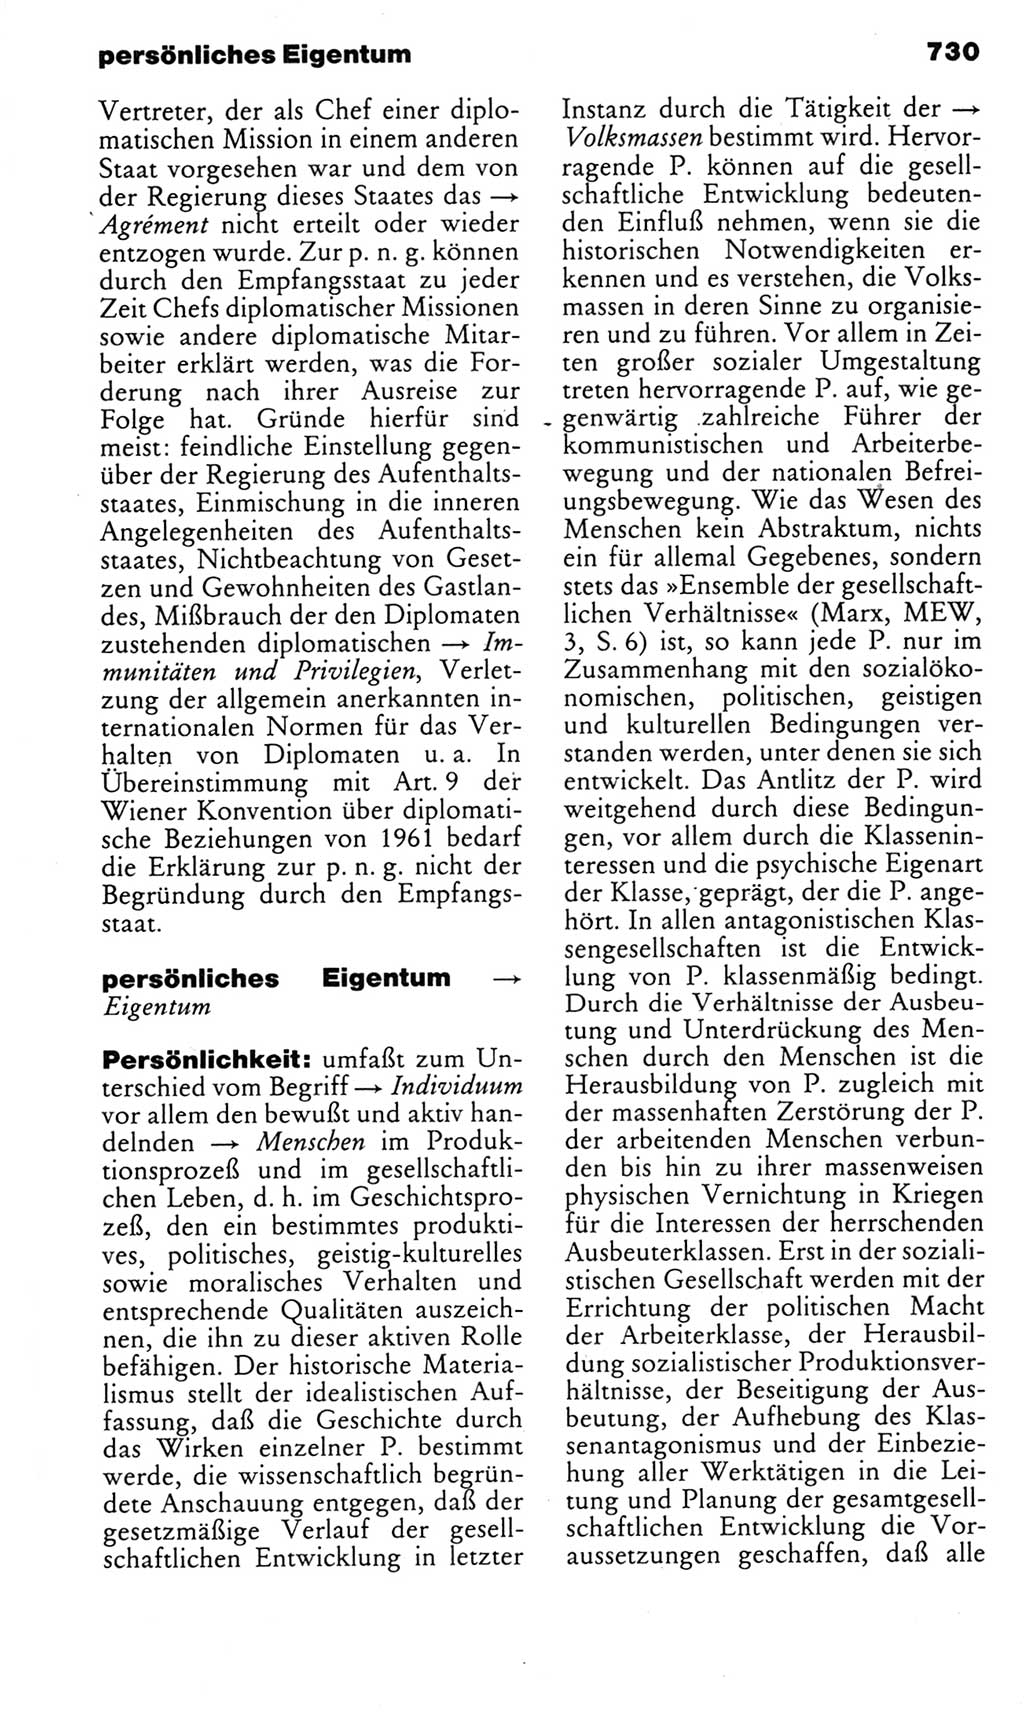 Kleines politisches Wörterbuch [Deutsche Demokratische Republik (DDR)] 1985, Seite 730 (Kl. pol. Wb. DDR 1985, S. 730)